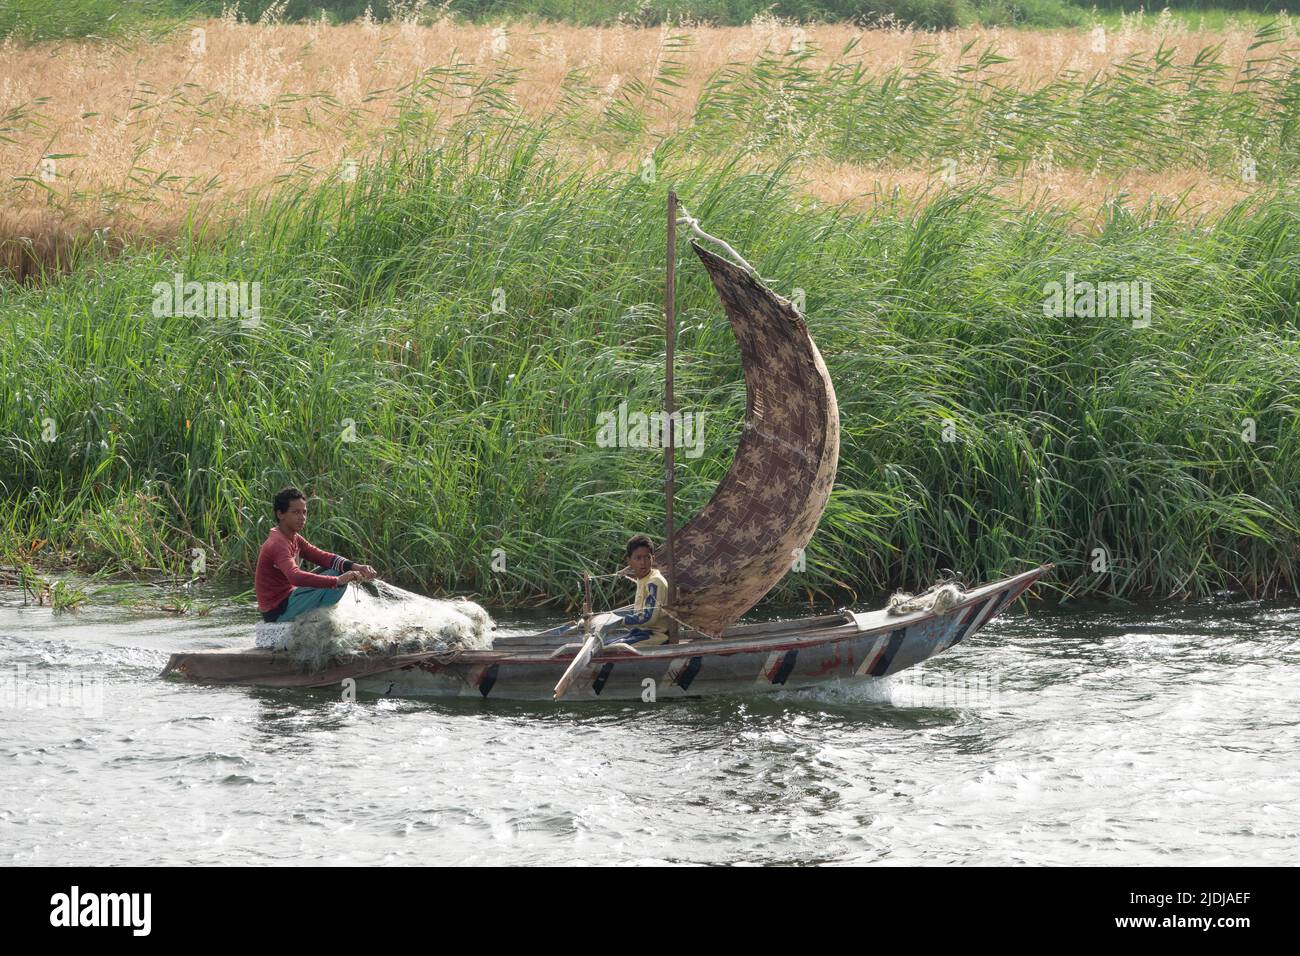 River Nile fishermen, Egypt Stock Photo